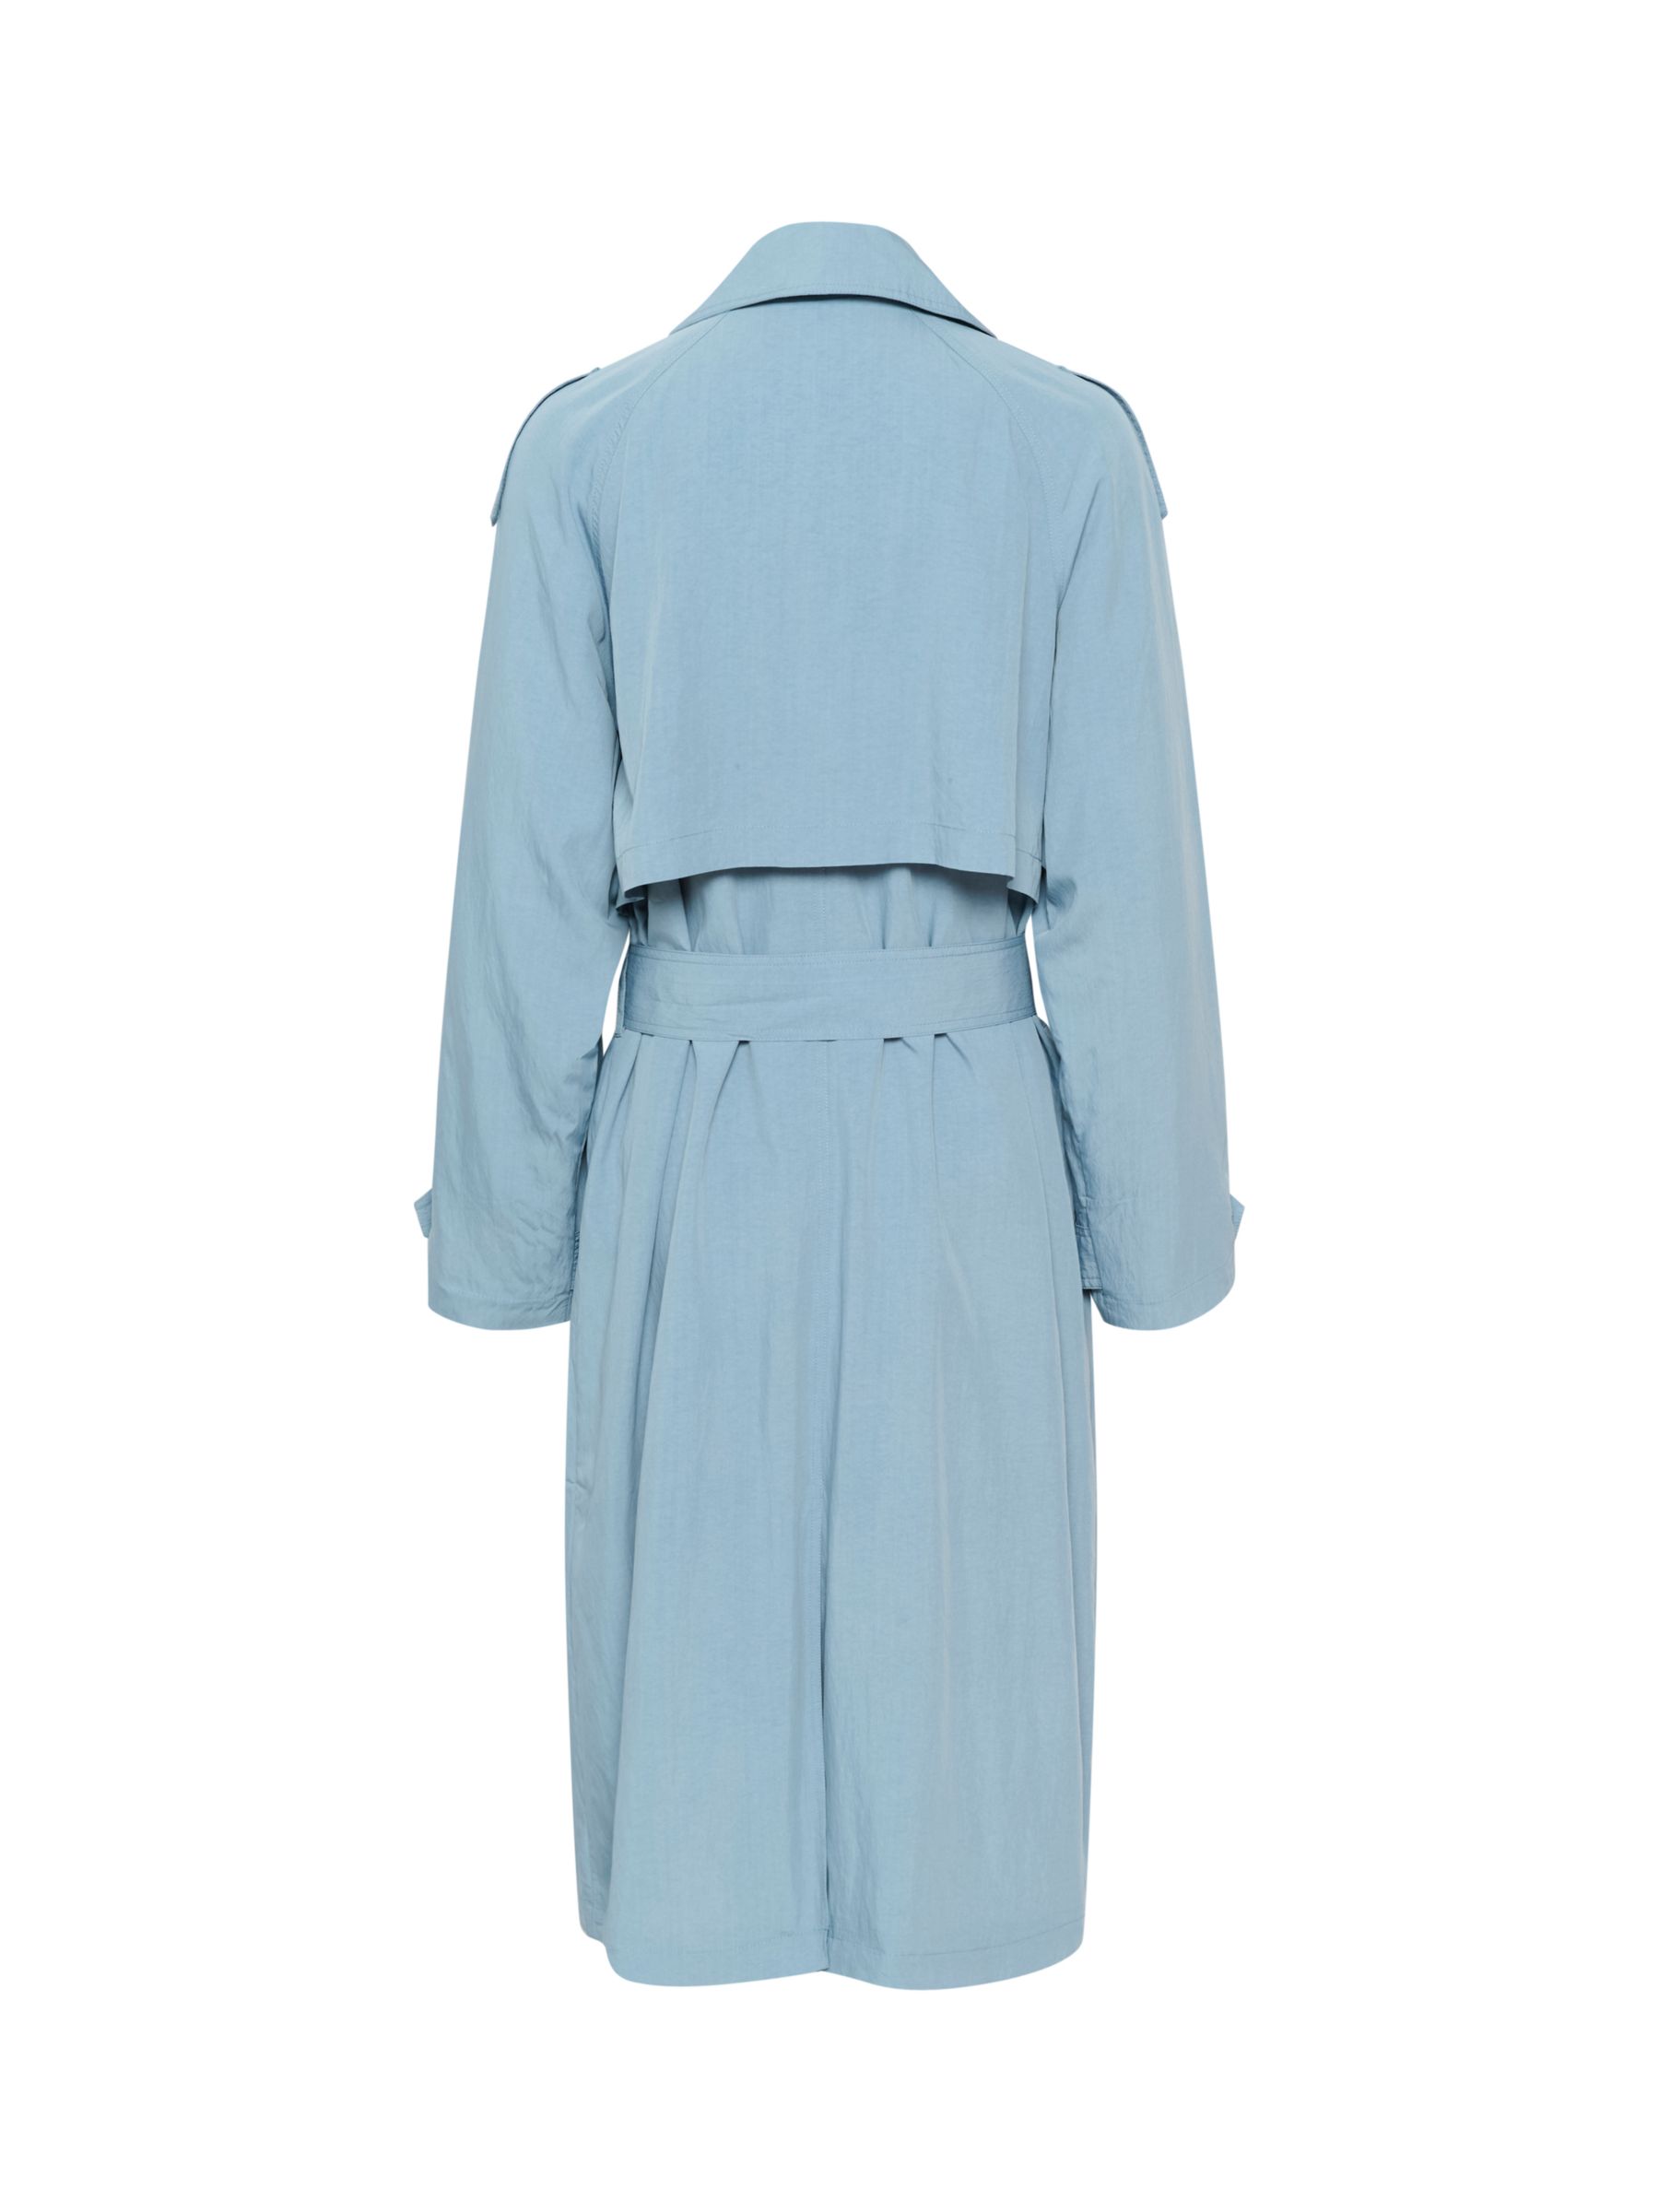 Buy Saint Tropez Colette Belted Trenchcoat, Windward Blue Online at johnlewis.com